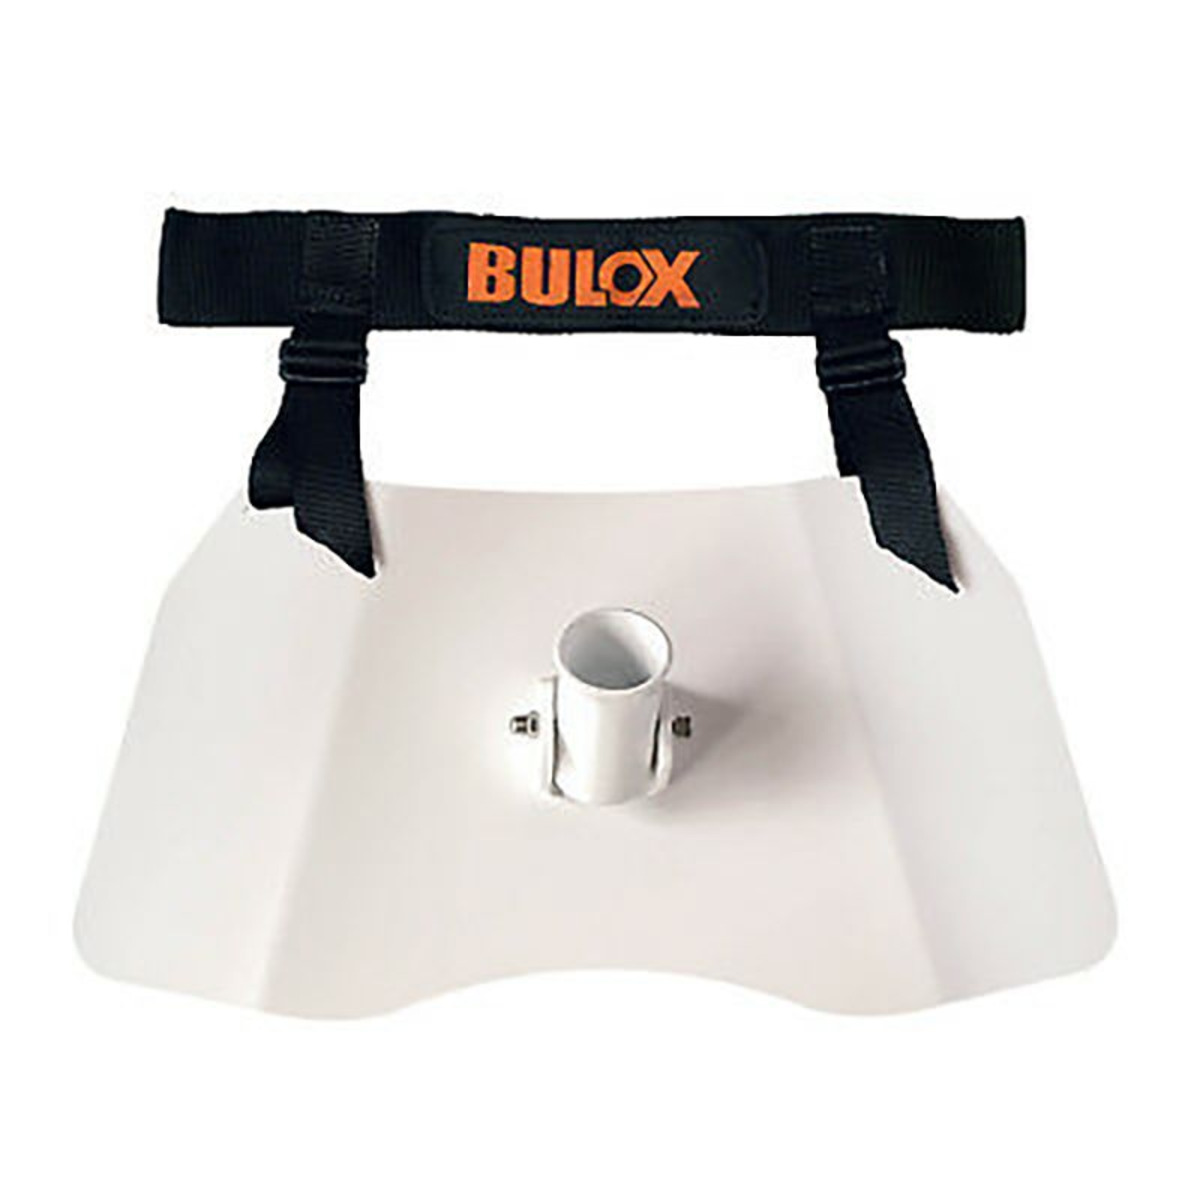 Bulox Aluminium Trolling Belt - White